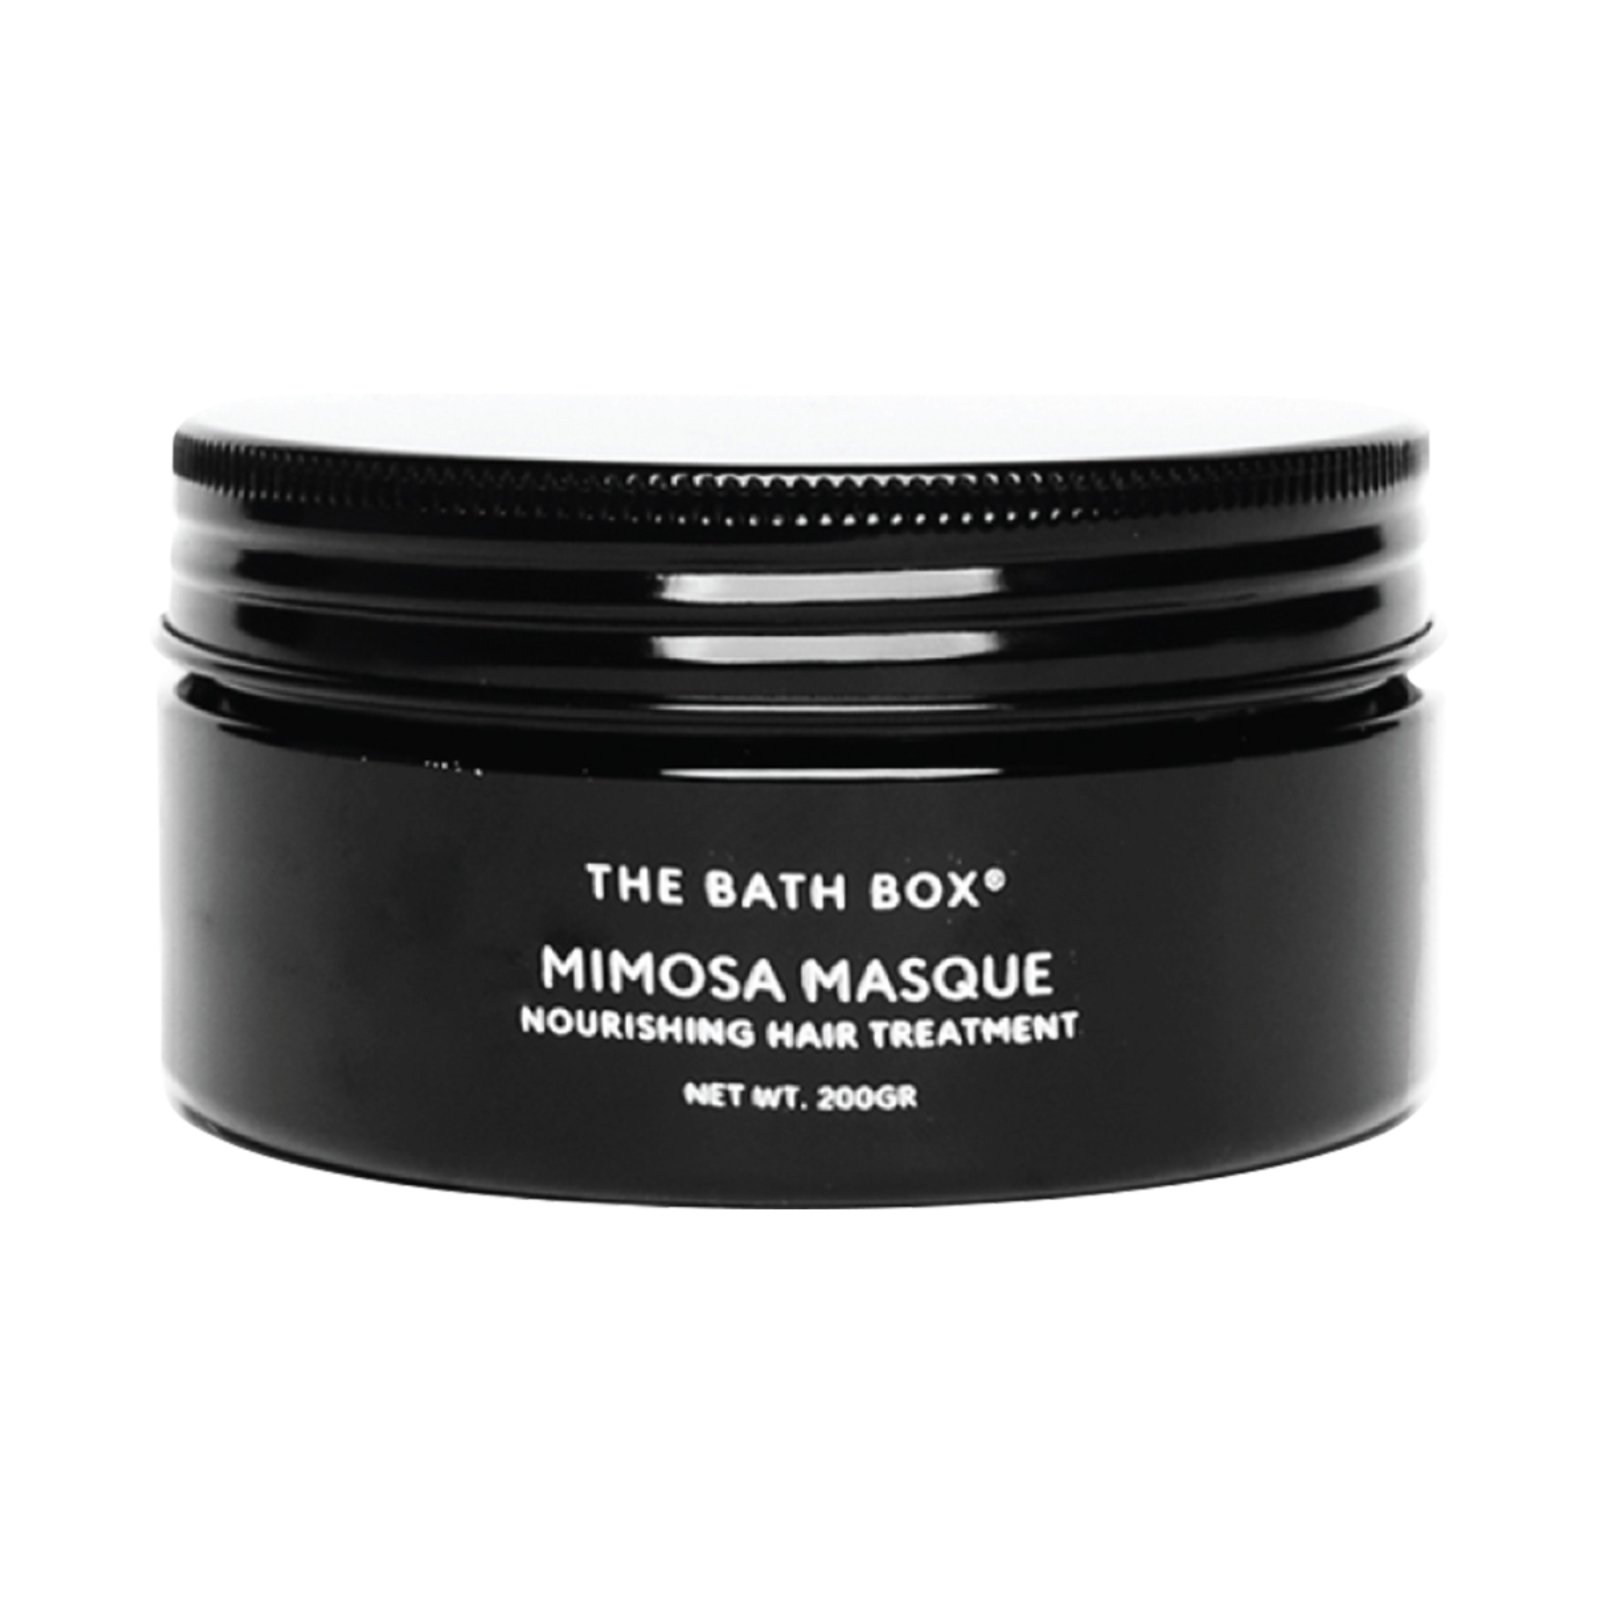 The Bath Box Mimosa Masque Hair Treatment | Review Marsha Beauty